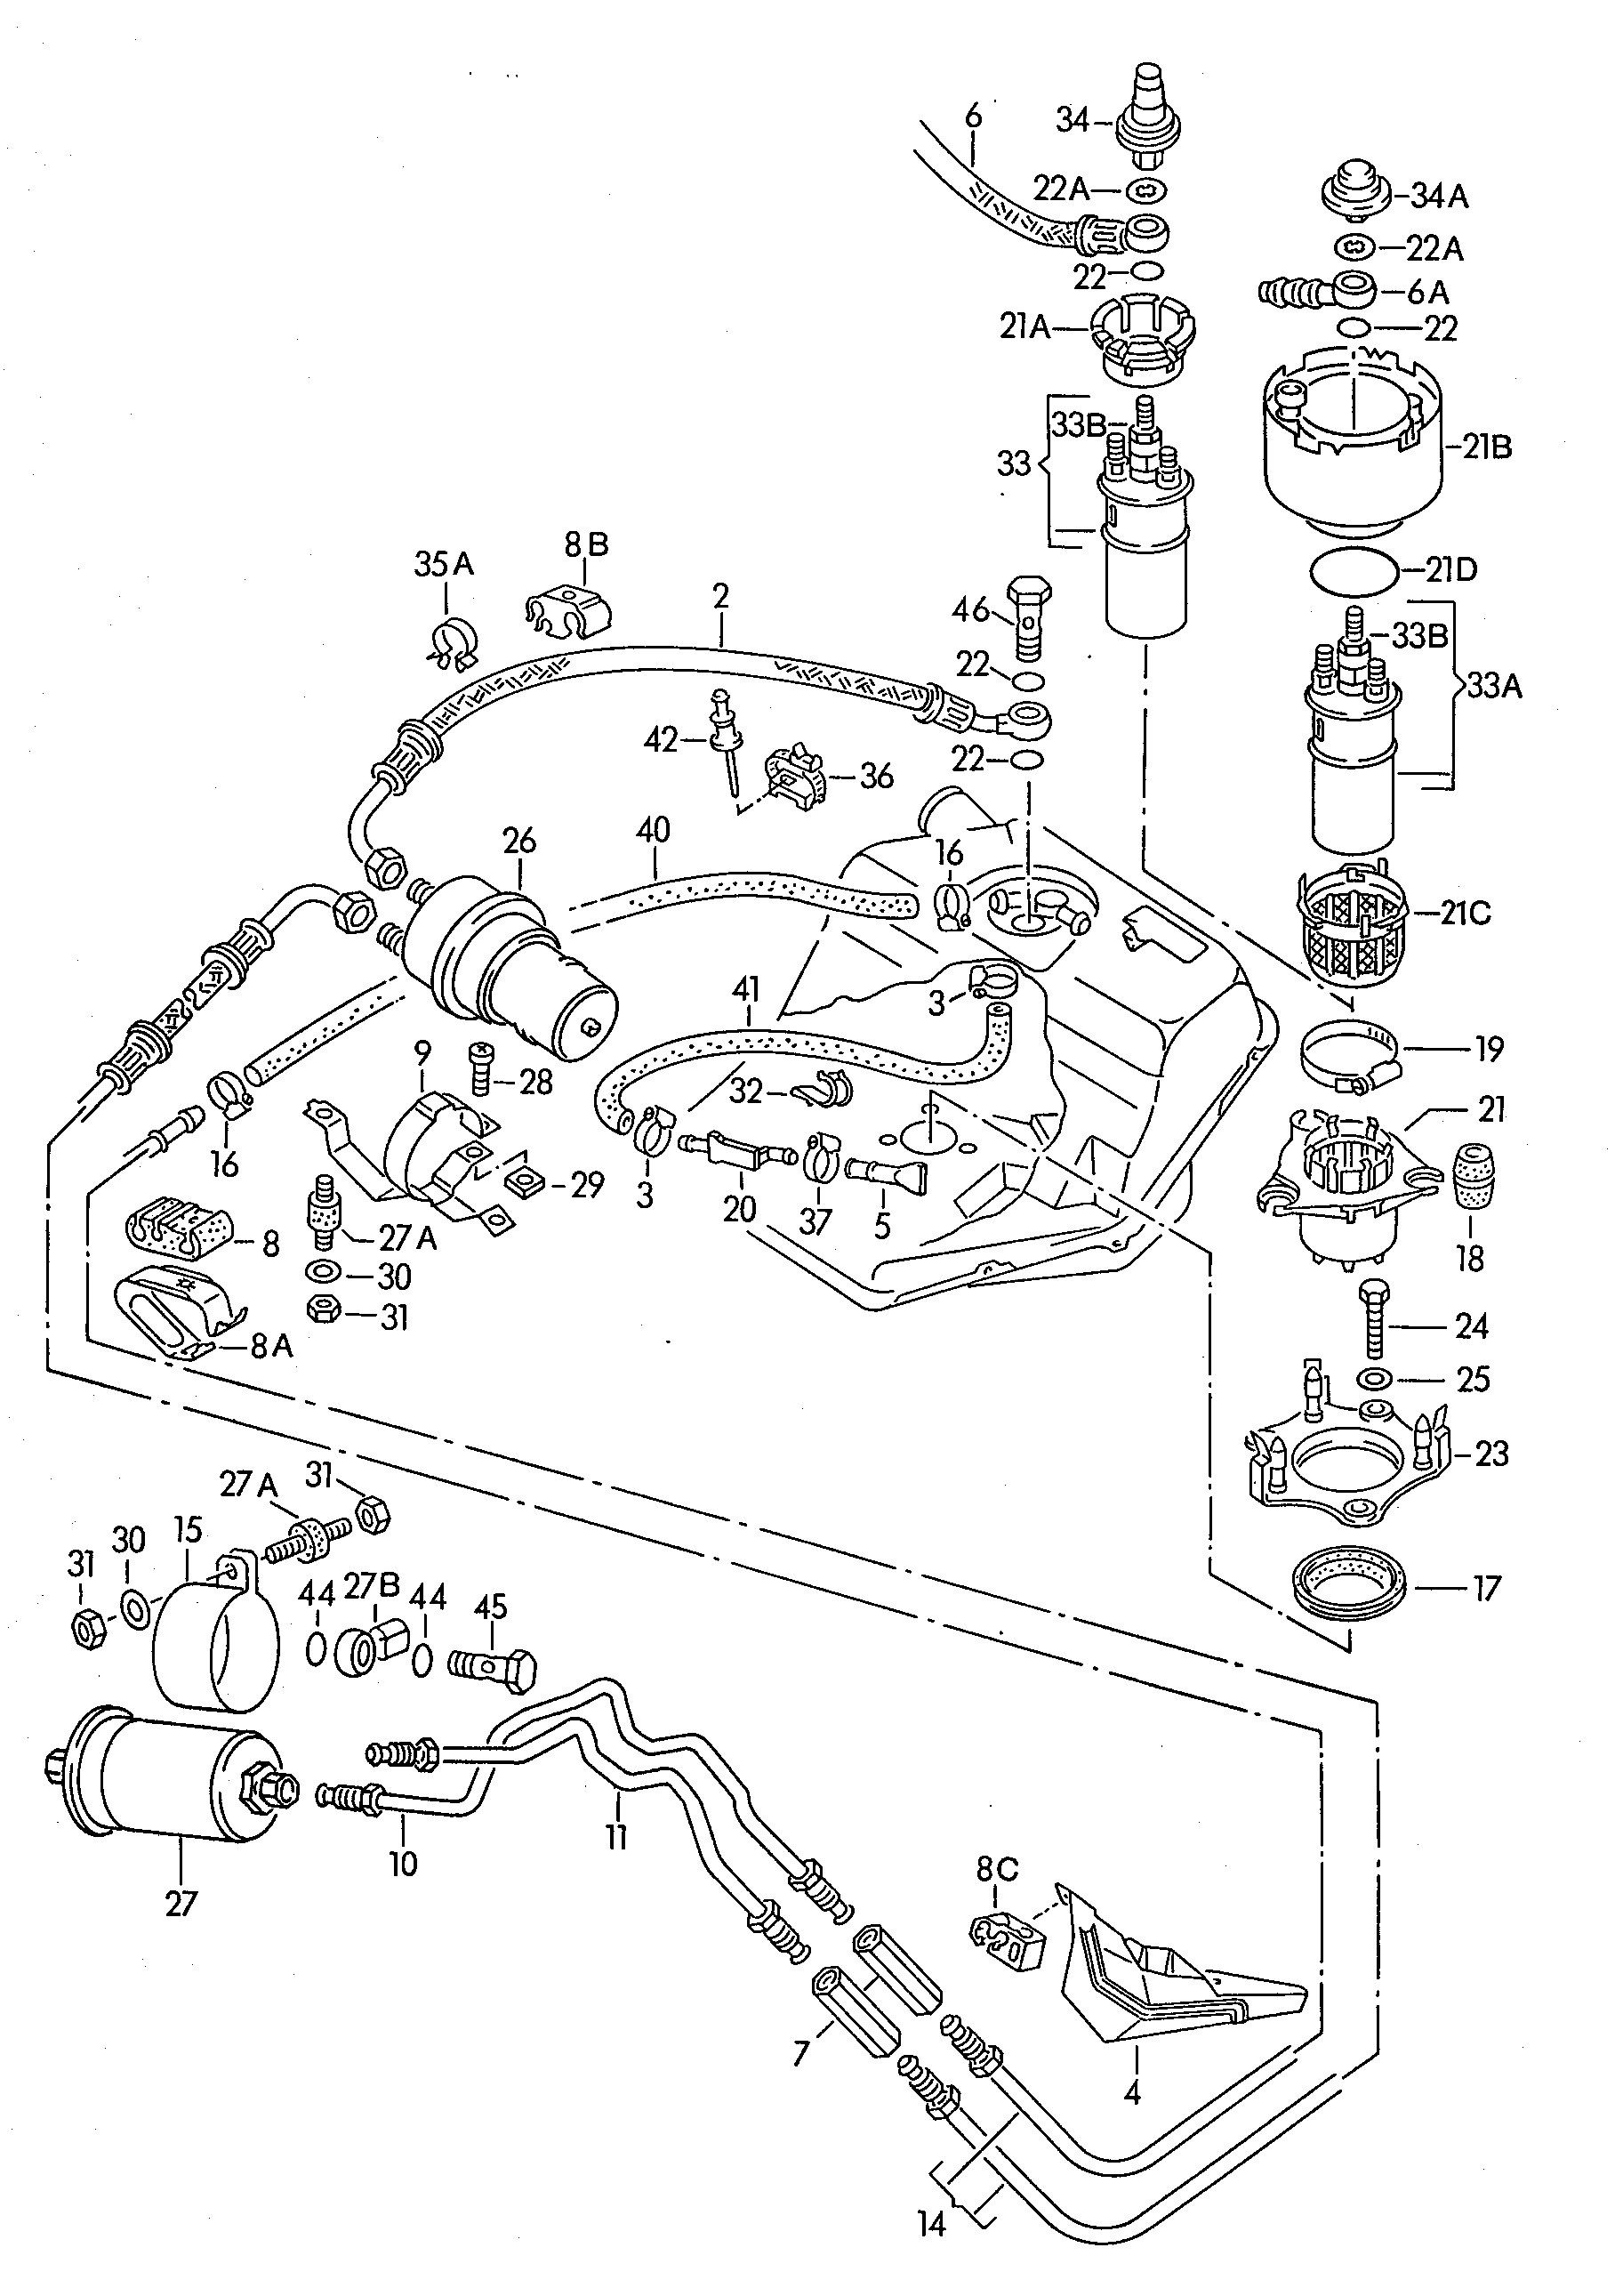 燃油存储器; 燃油滤清器; 燃油泵; 燃油管 - Audi 100/Avant(A100)  